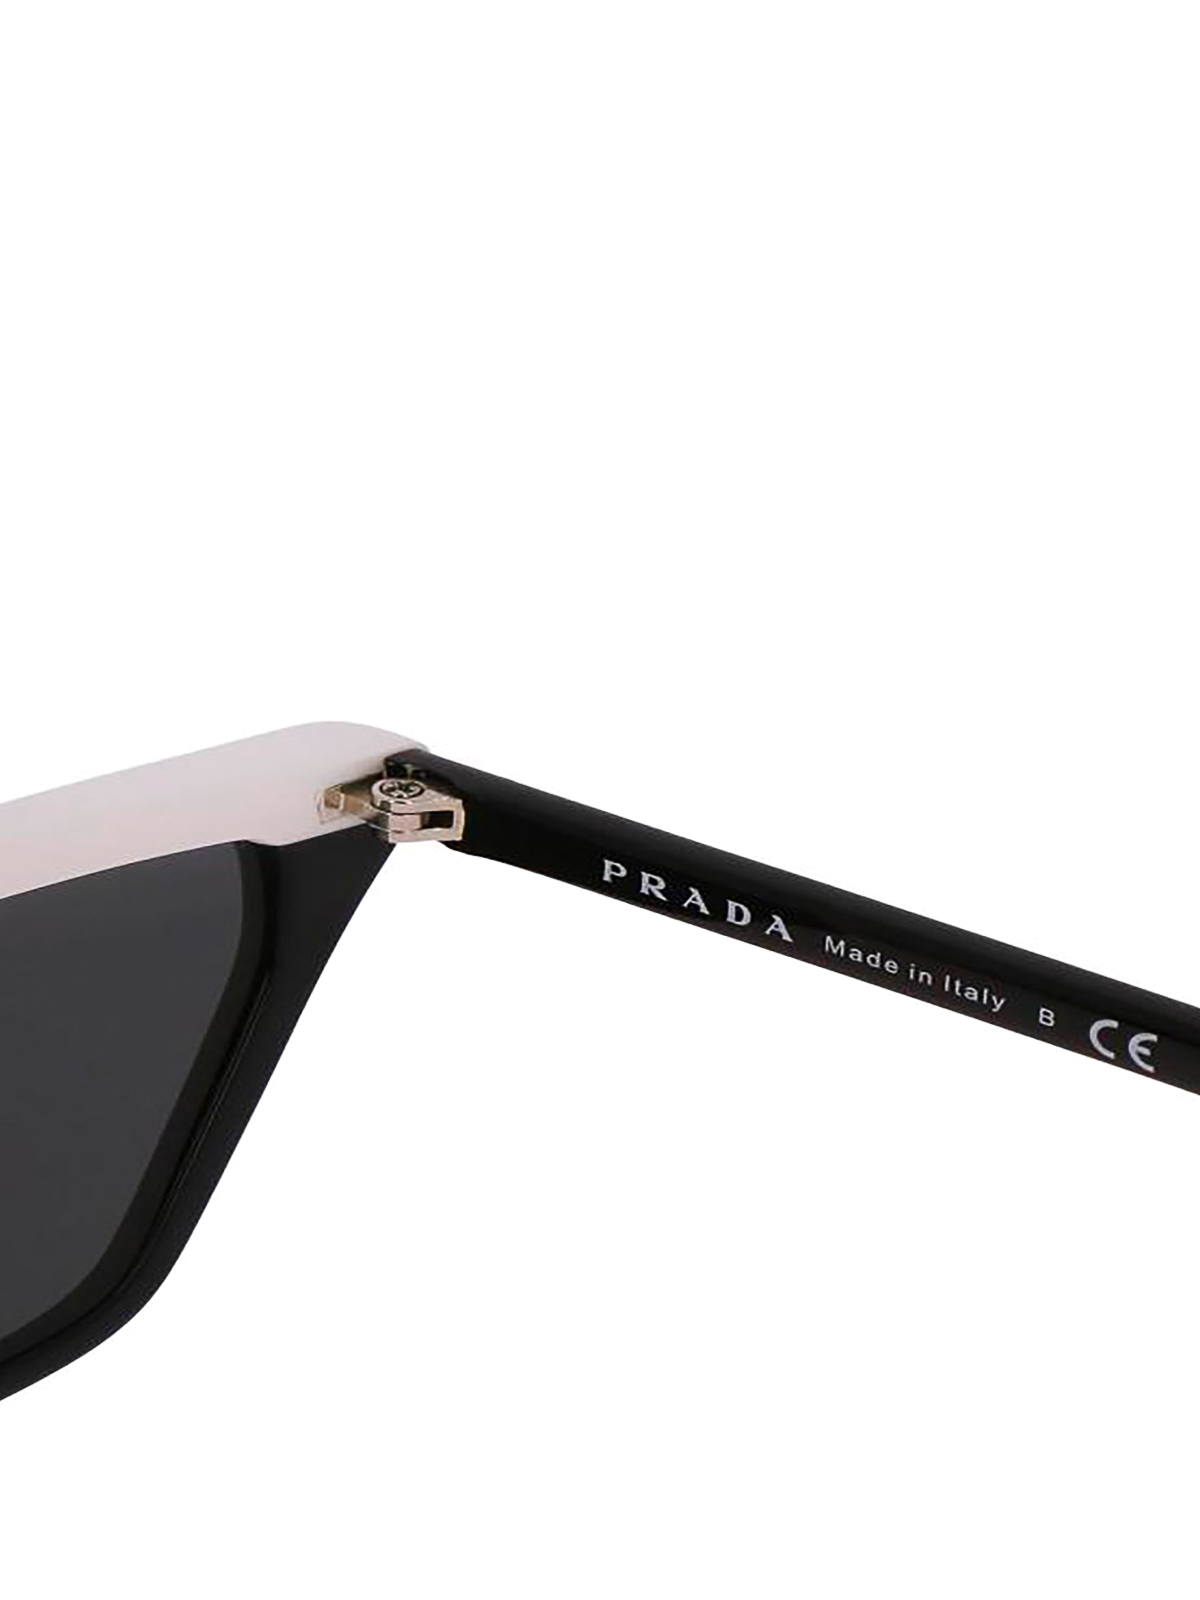 Sunglasses Prada - Ultravox black and pink sunglasses - SPR19UYC45S0